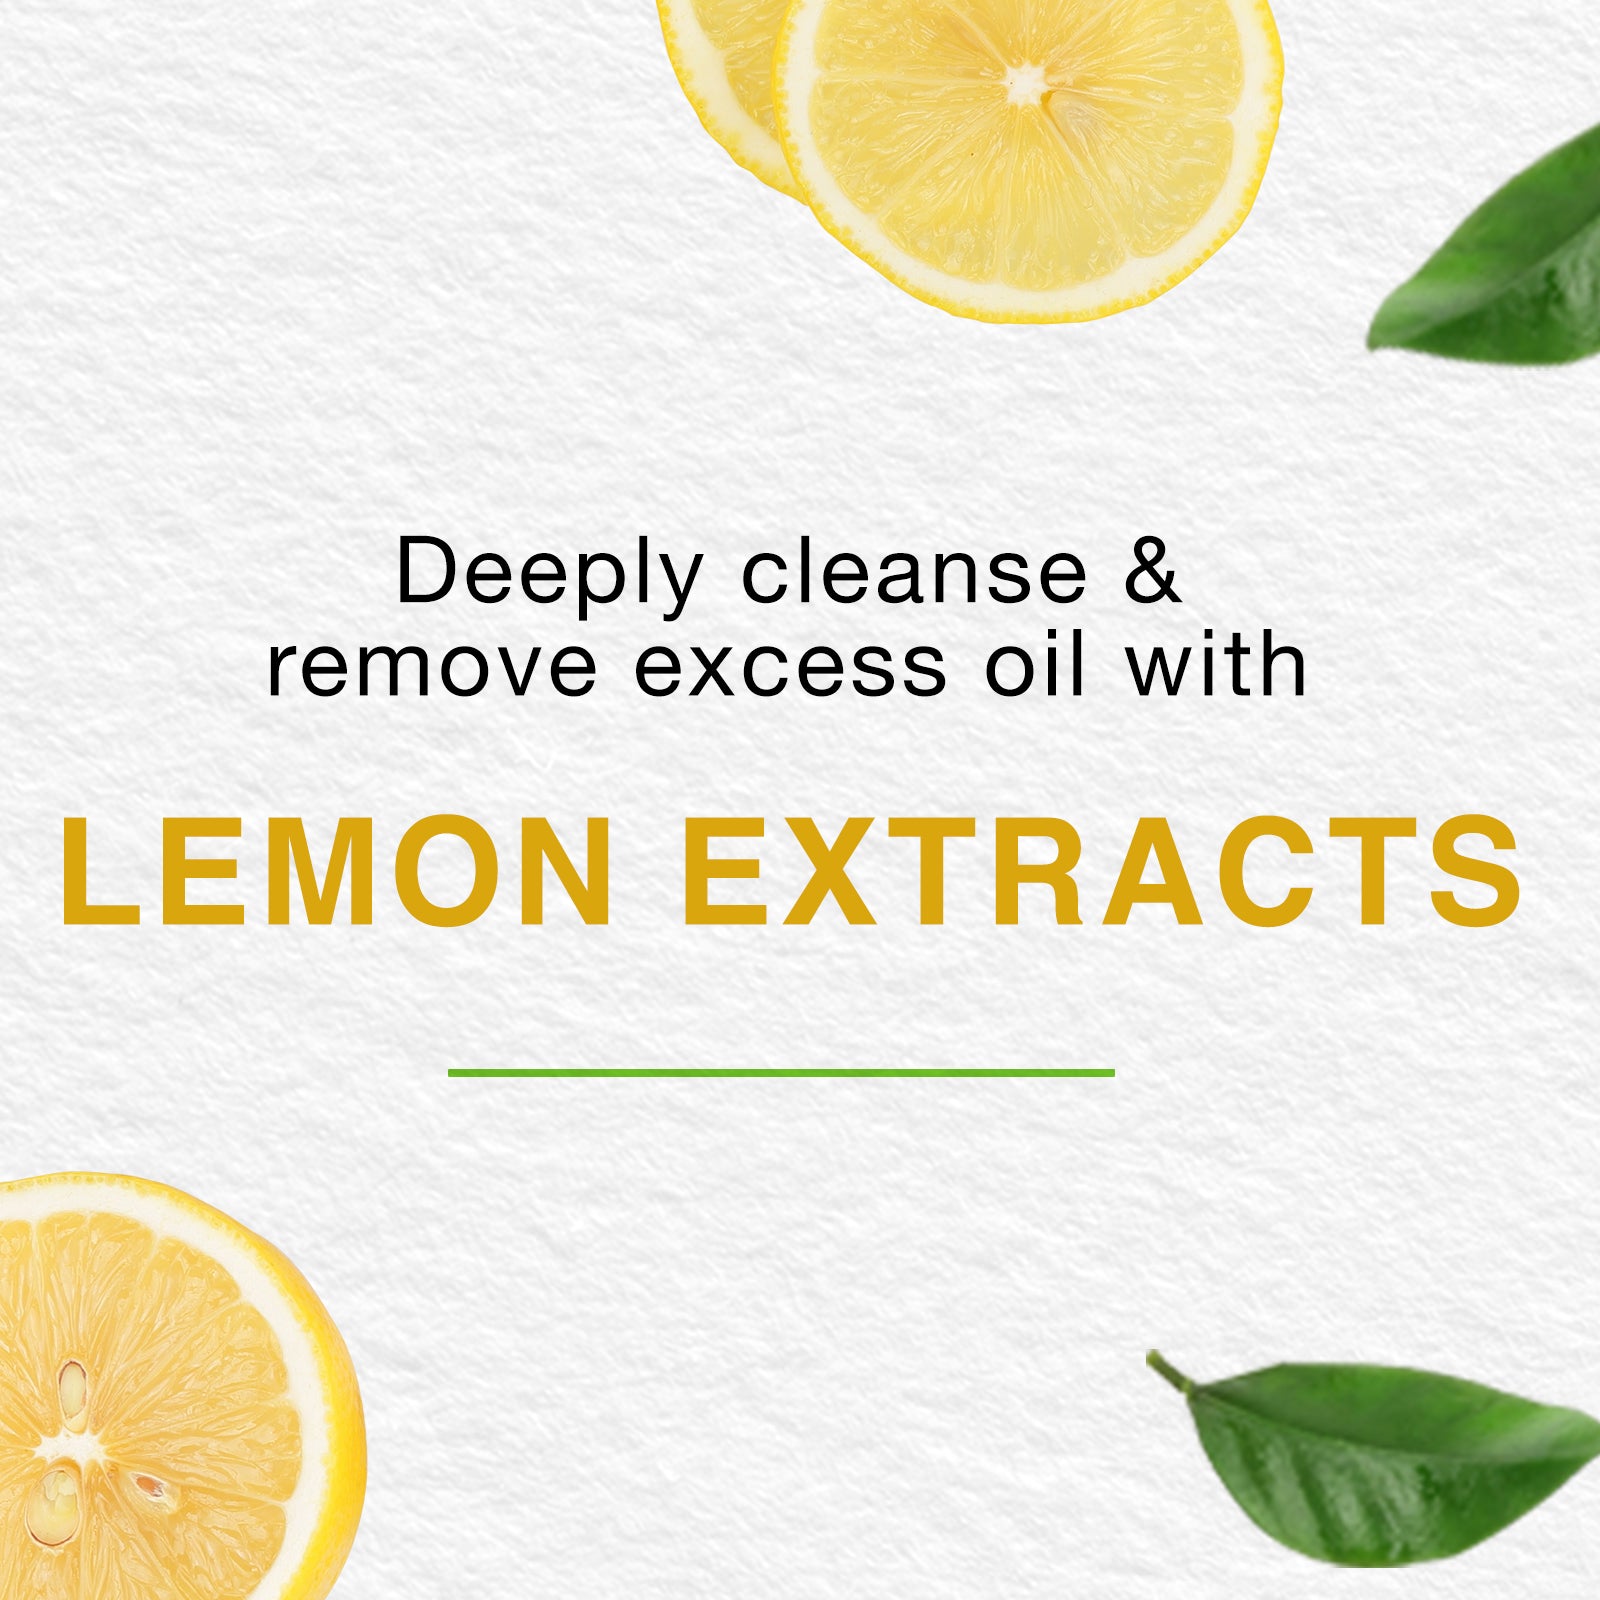 Oil Control Lemon Face Wash 150ml